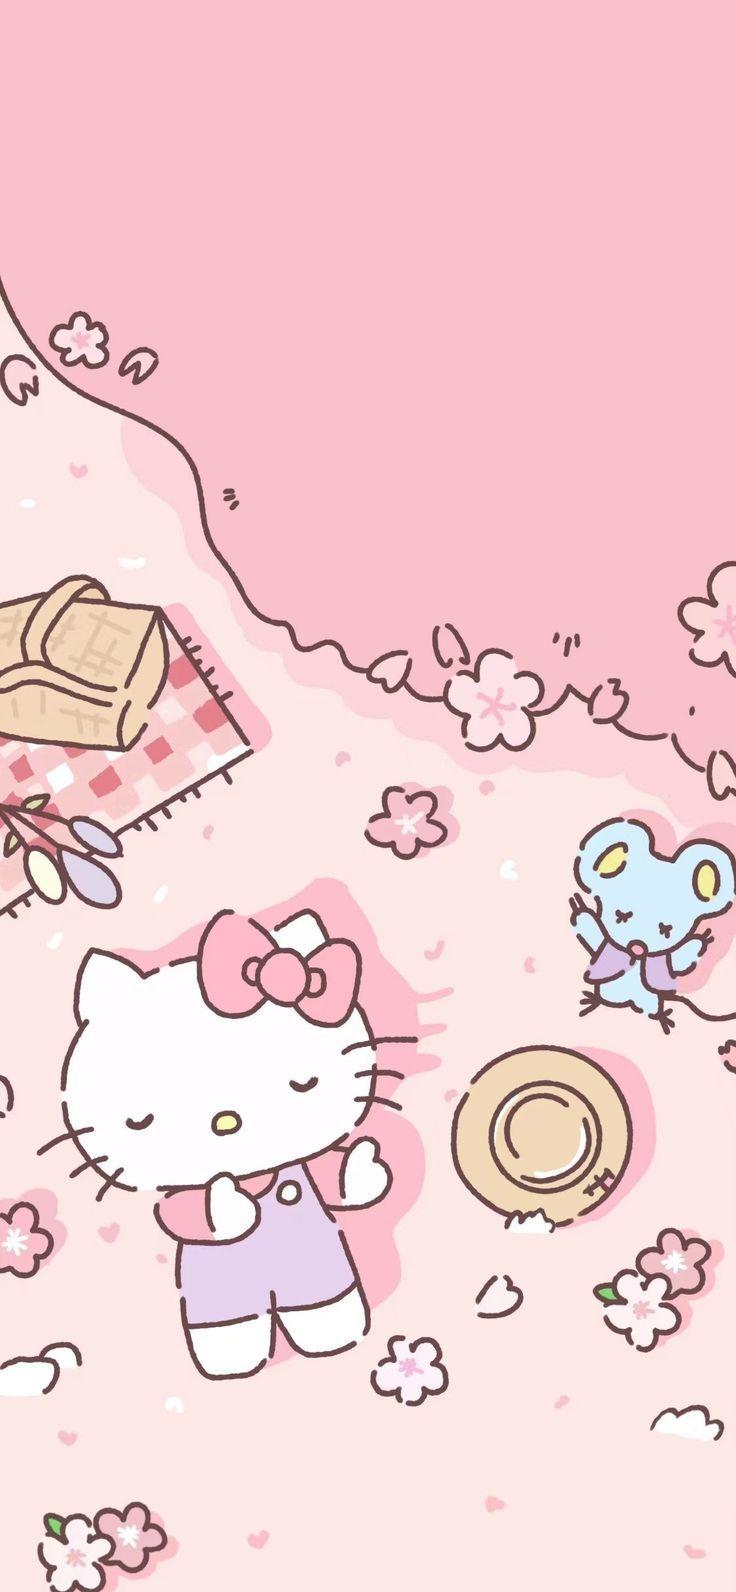 Maia Perez On Hello Kitty Wallpaper